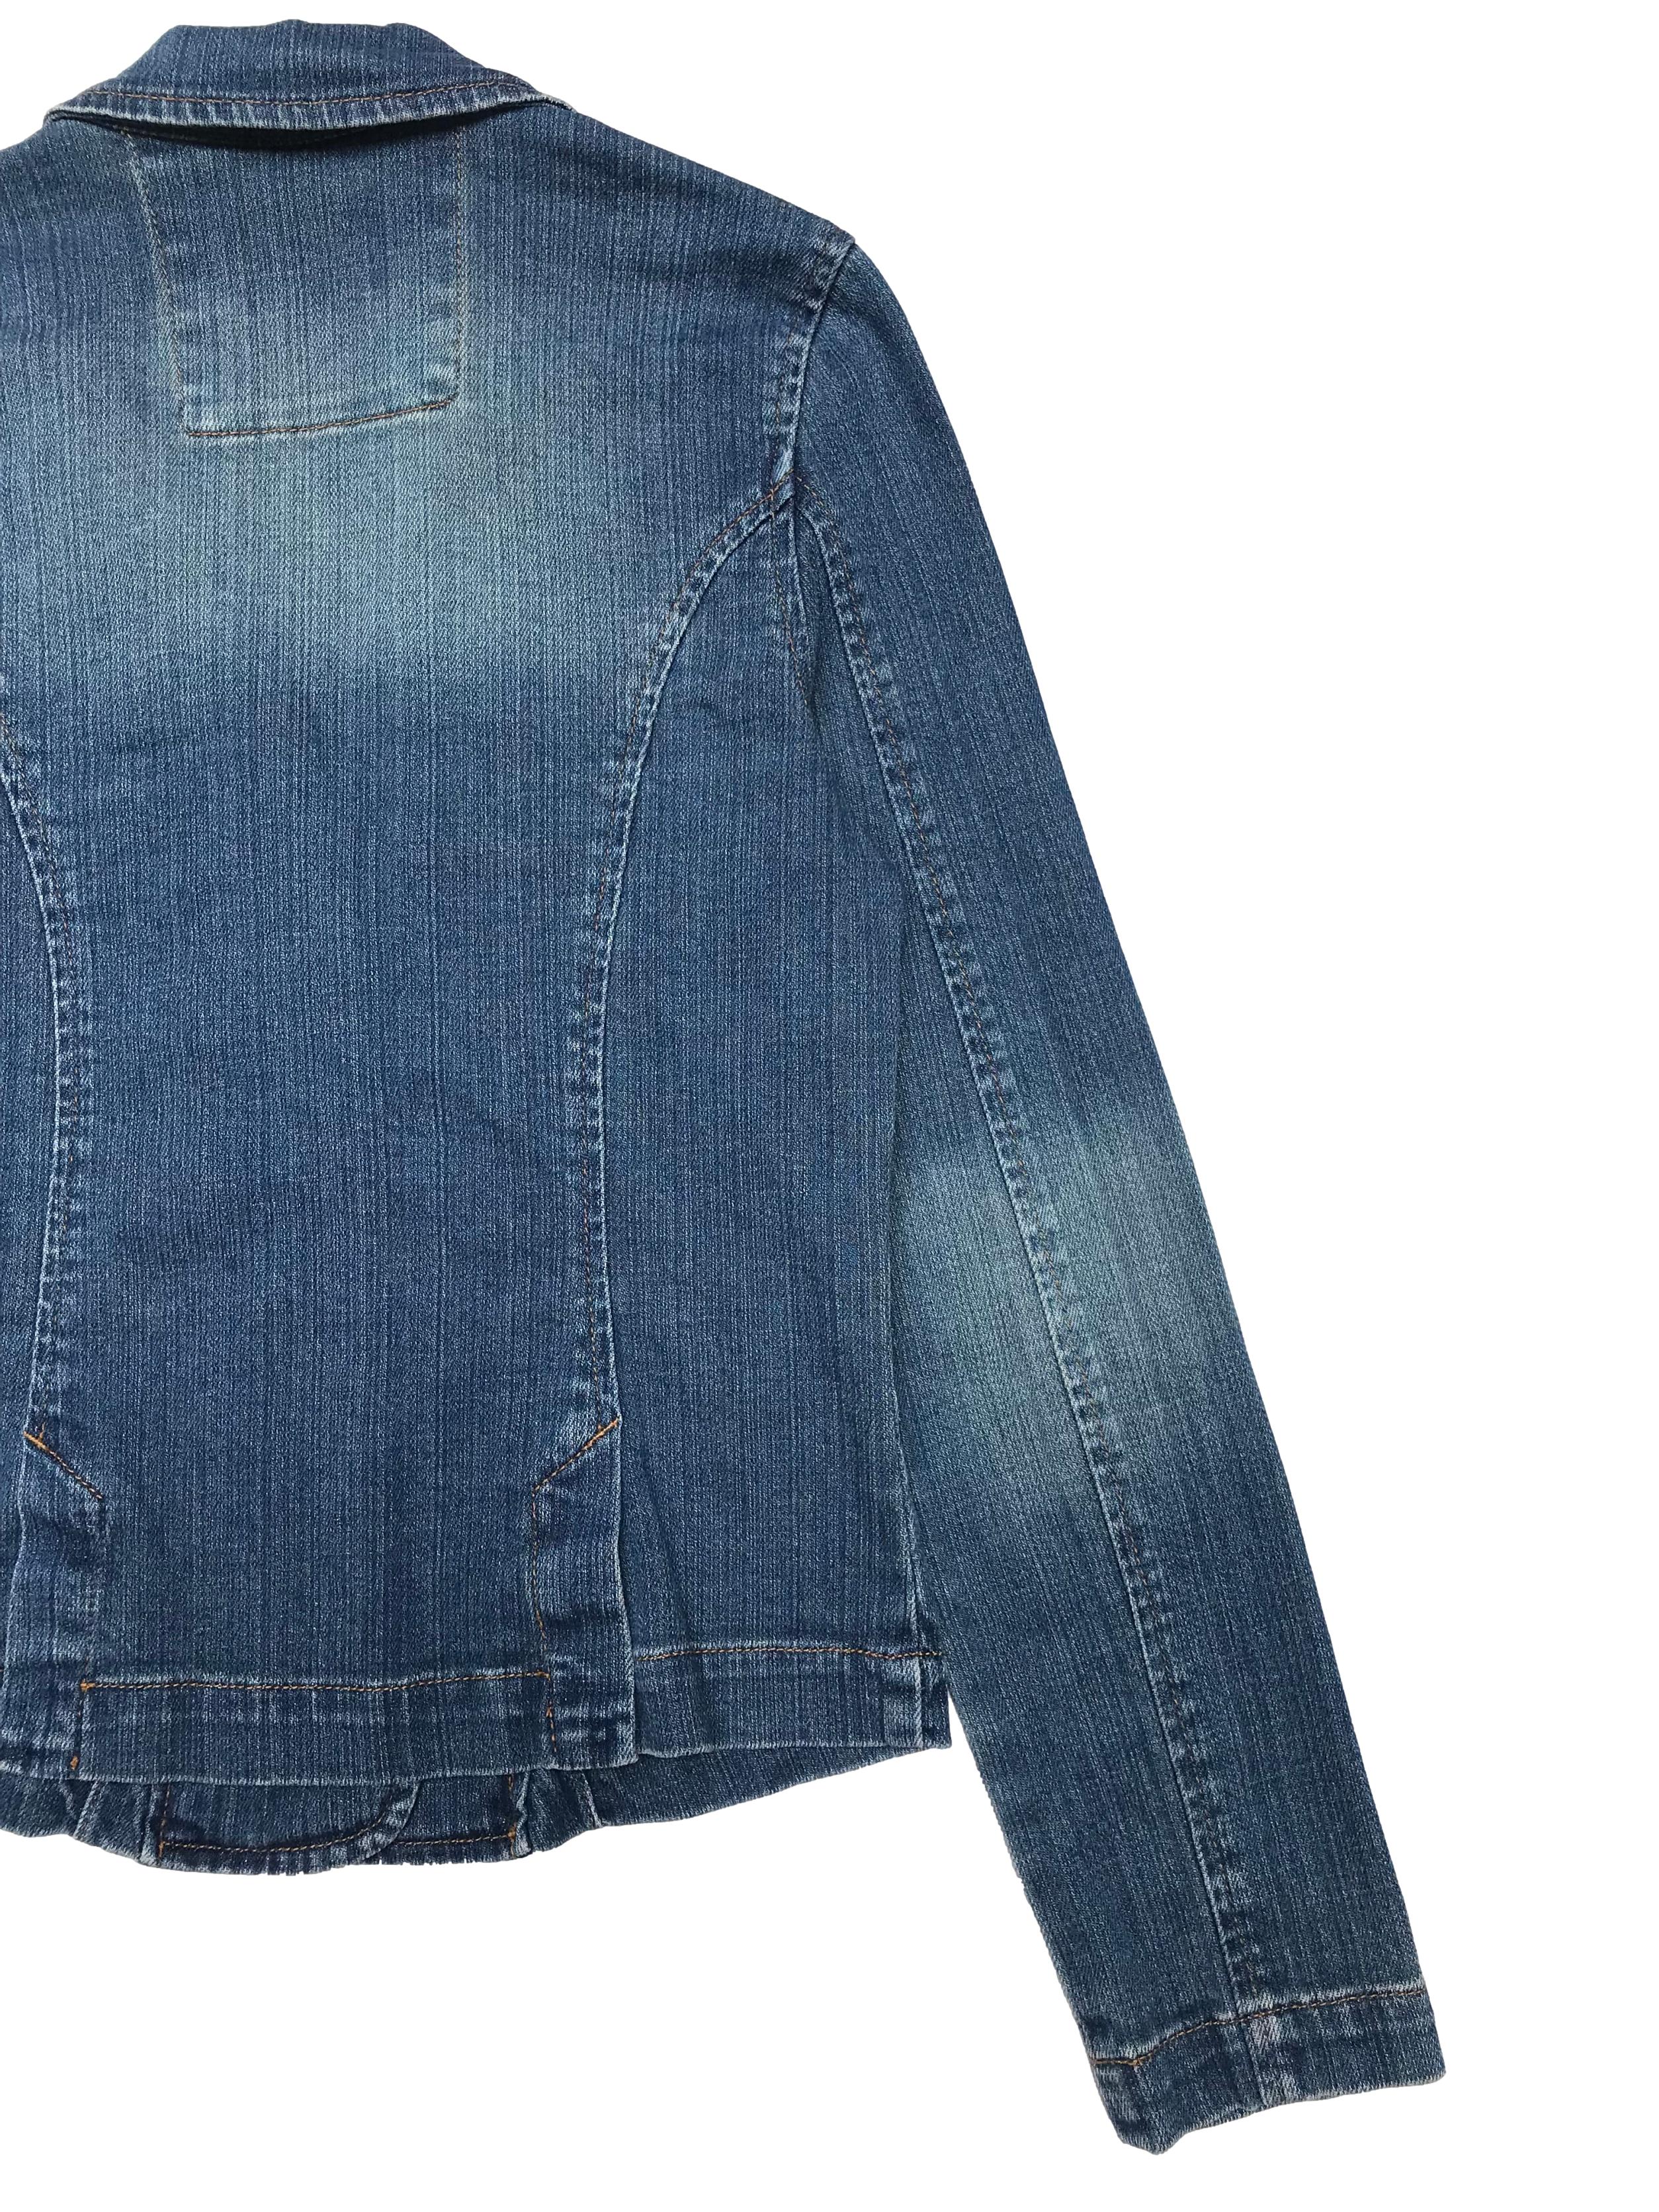 Casaca Squeeze de jean tipo blazer con solapas, botones y bolsillos, efecto focalizado. Busto 88cm Largo 52cm